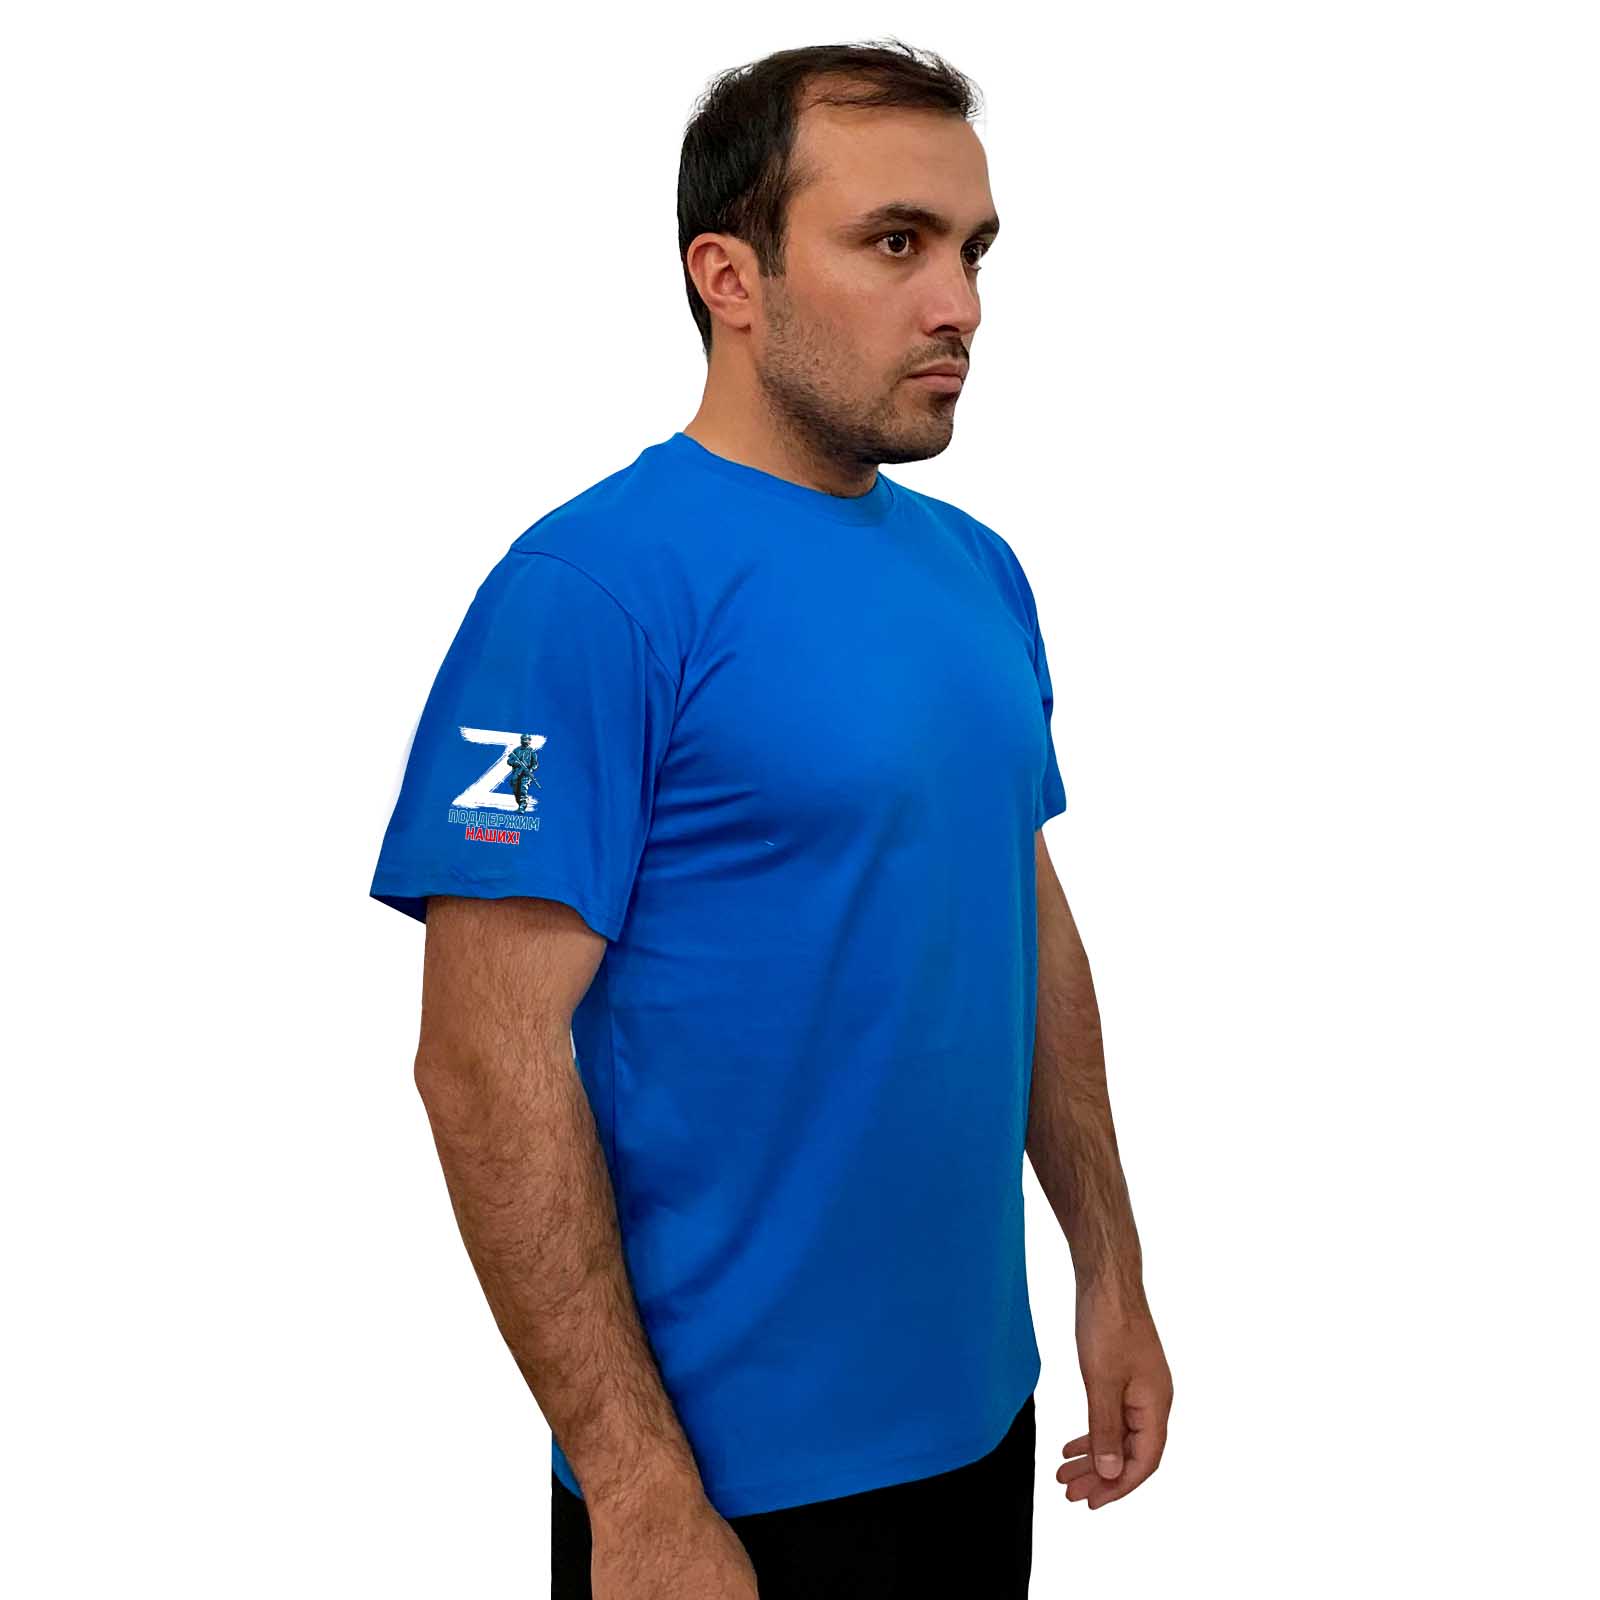 Купить надежную голубую футболку Z онлайн выгодно